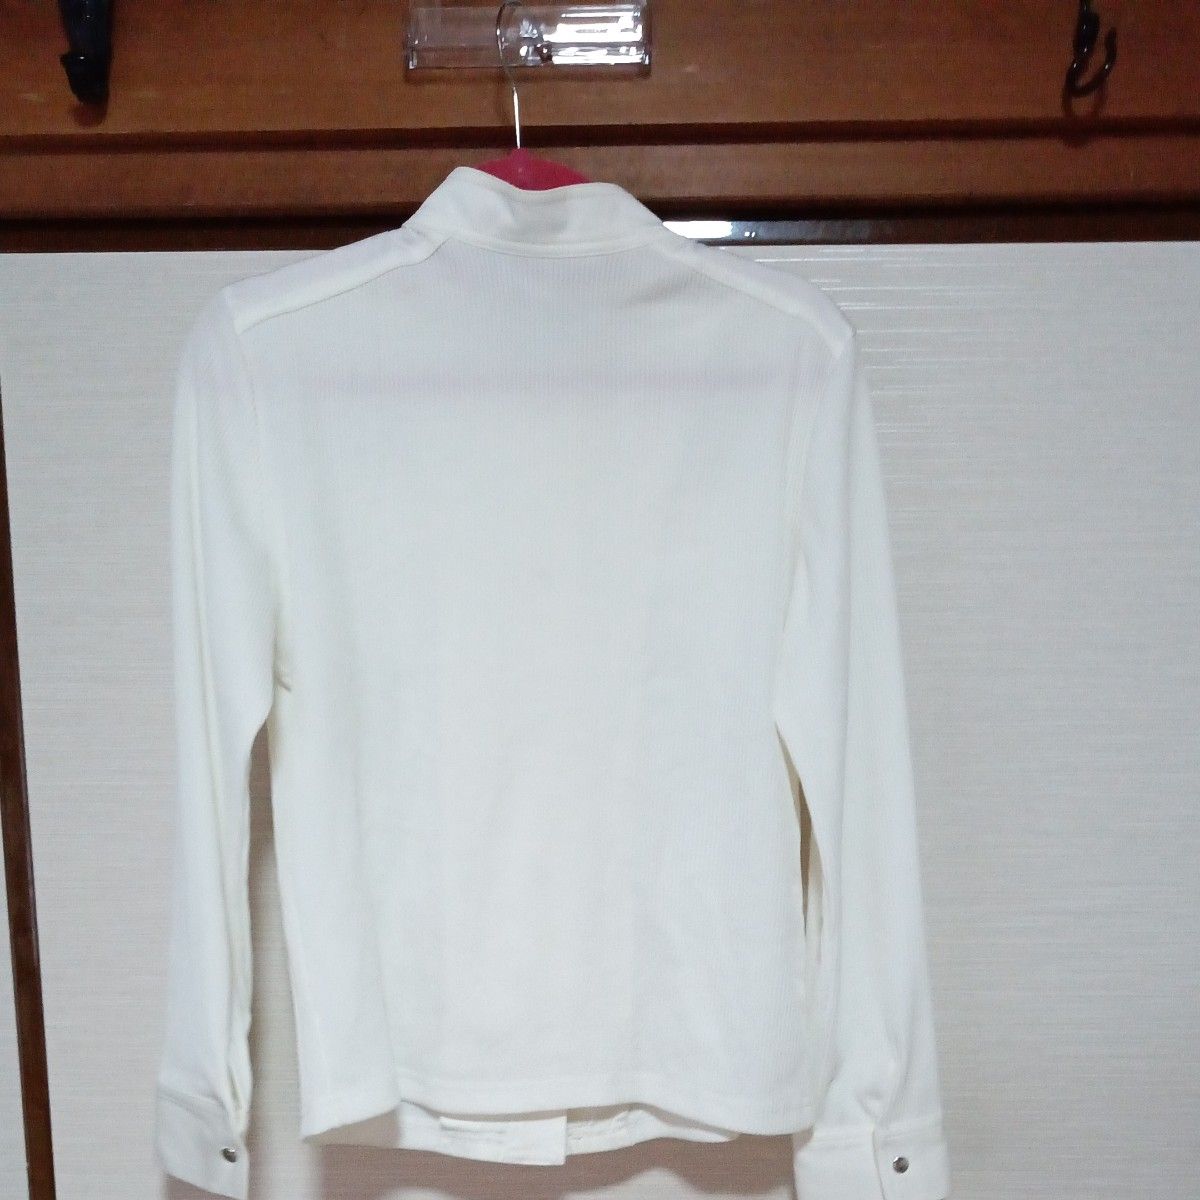 白アウターシャツ500円→450円に値下げ!